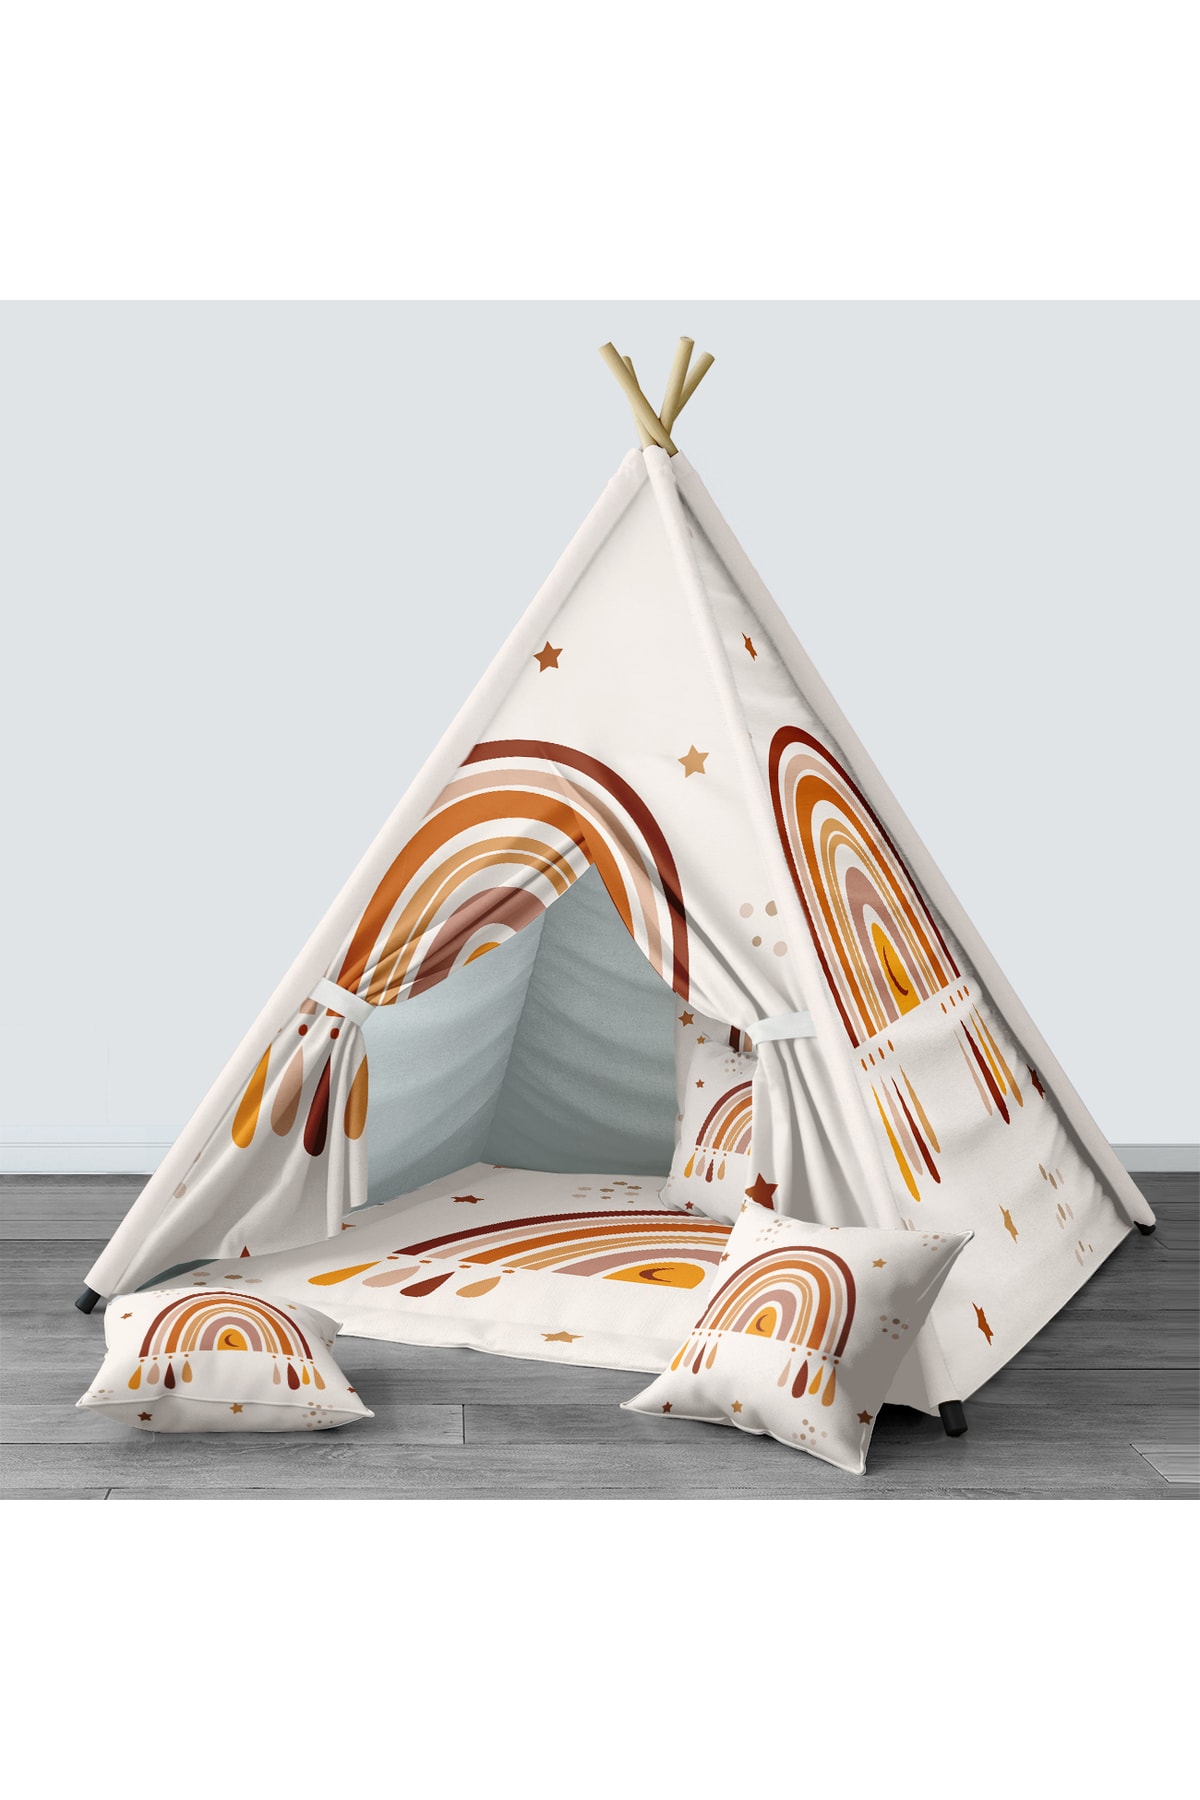 Tinybabyconcept Çocuk Odası Kızıldereli Çadır Katlanabilir Çocuk Oyun Çadırı Oyun Evi Gökkuşağı Desenli 026